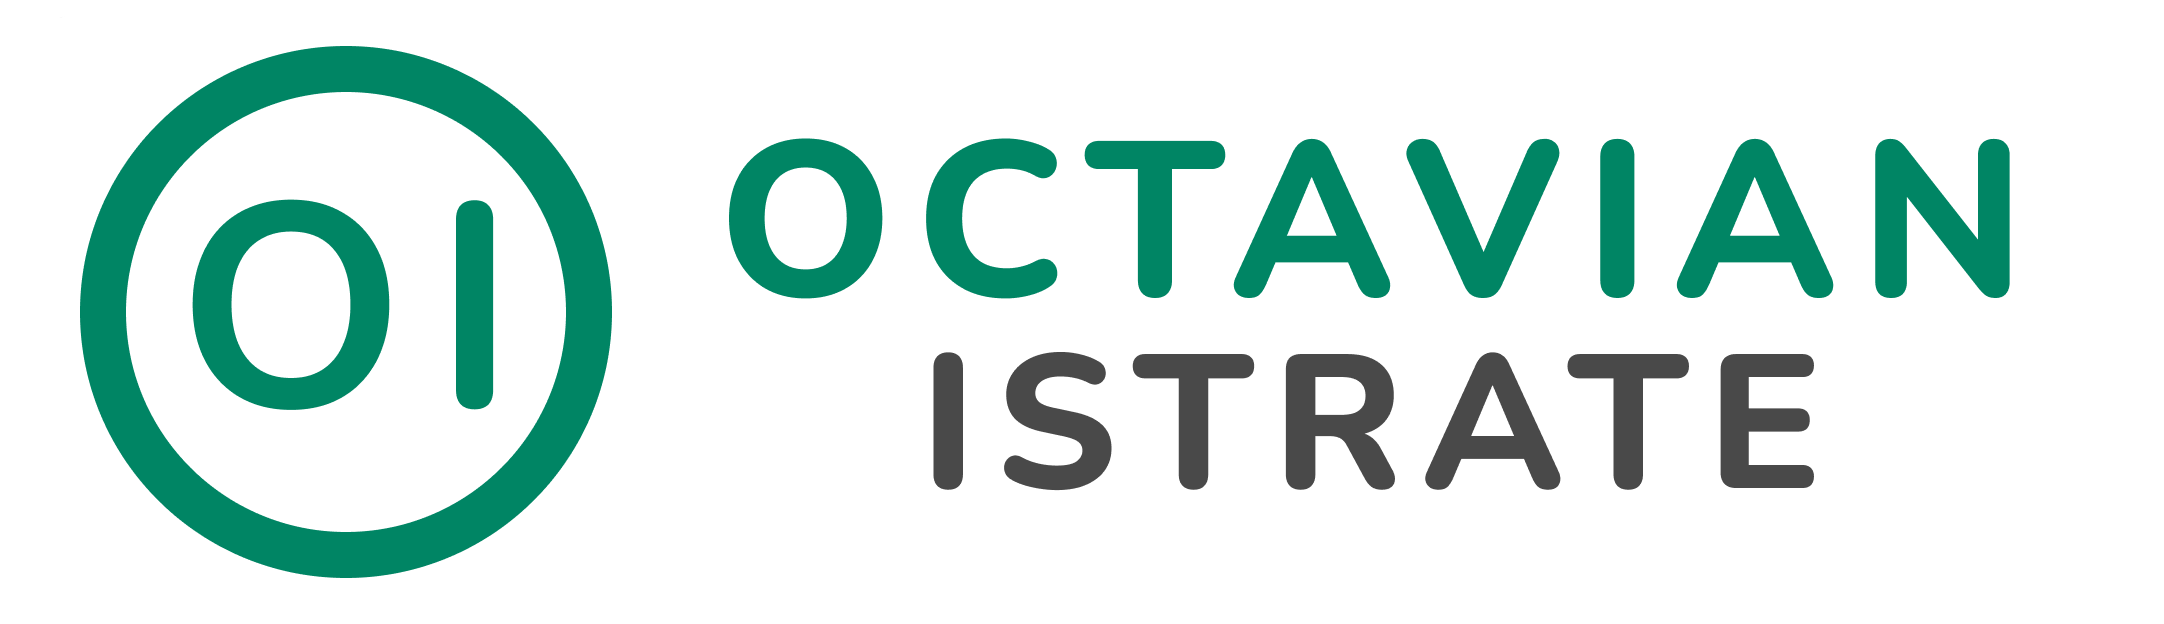 Octavian Istrate Logo